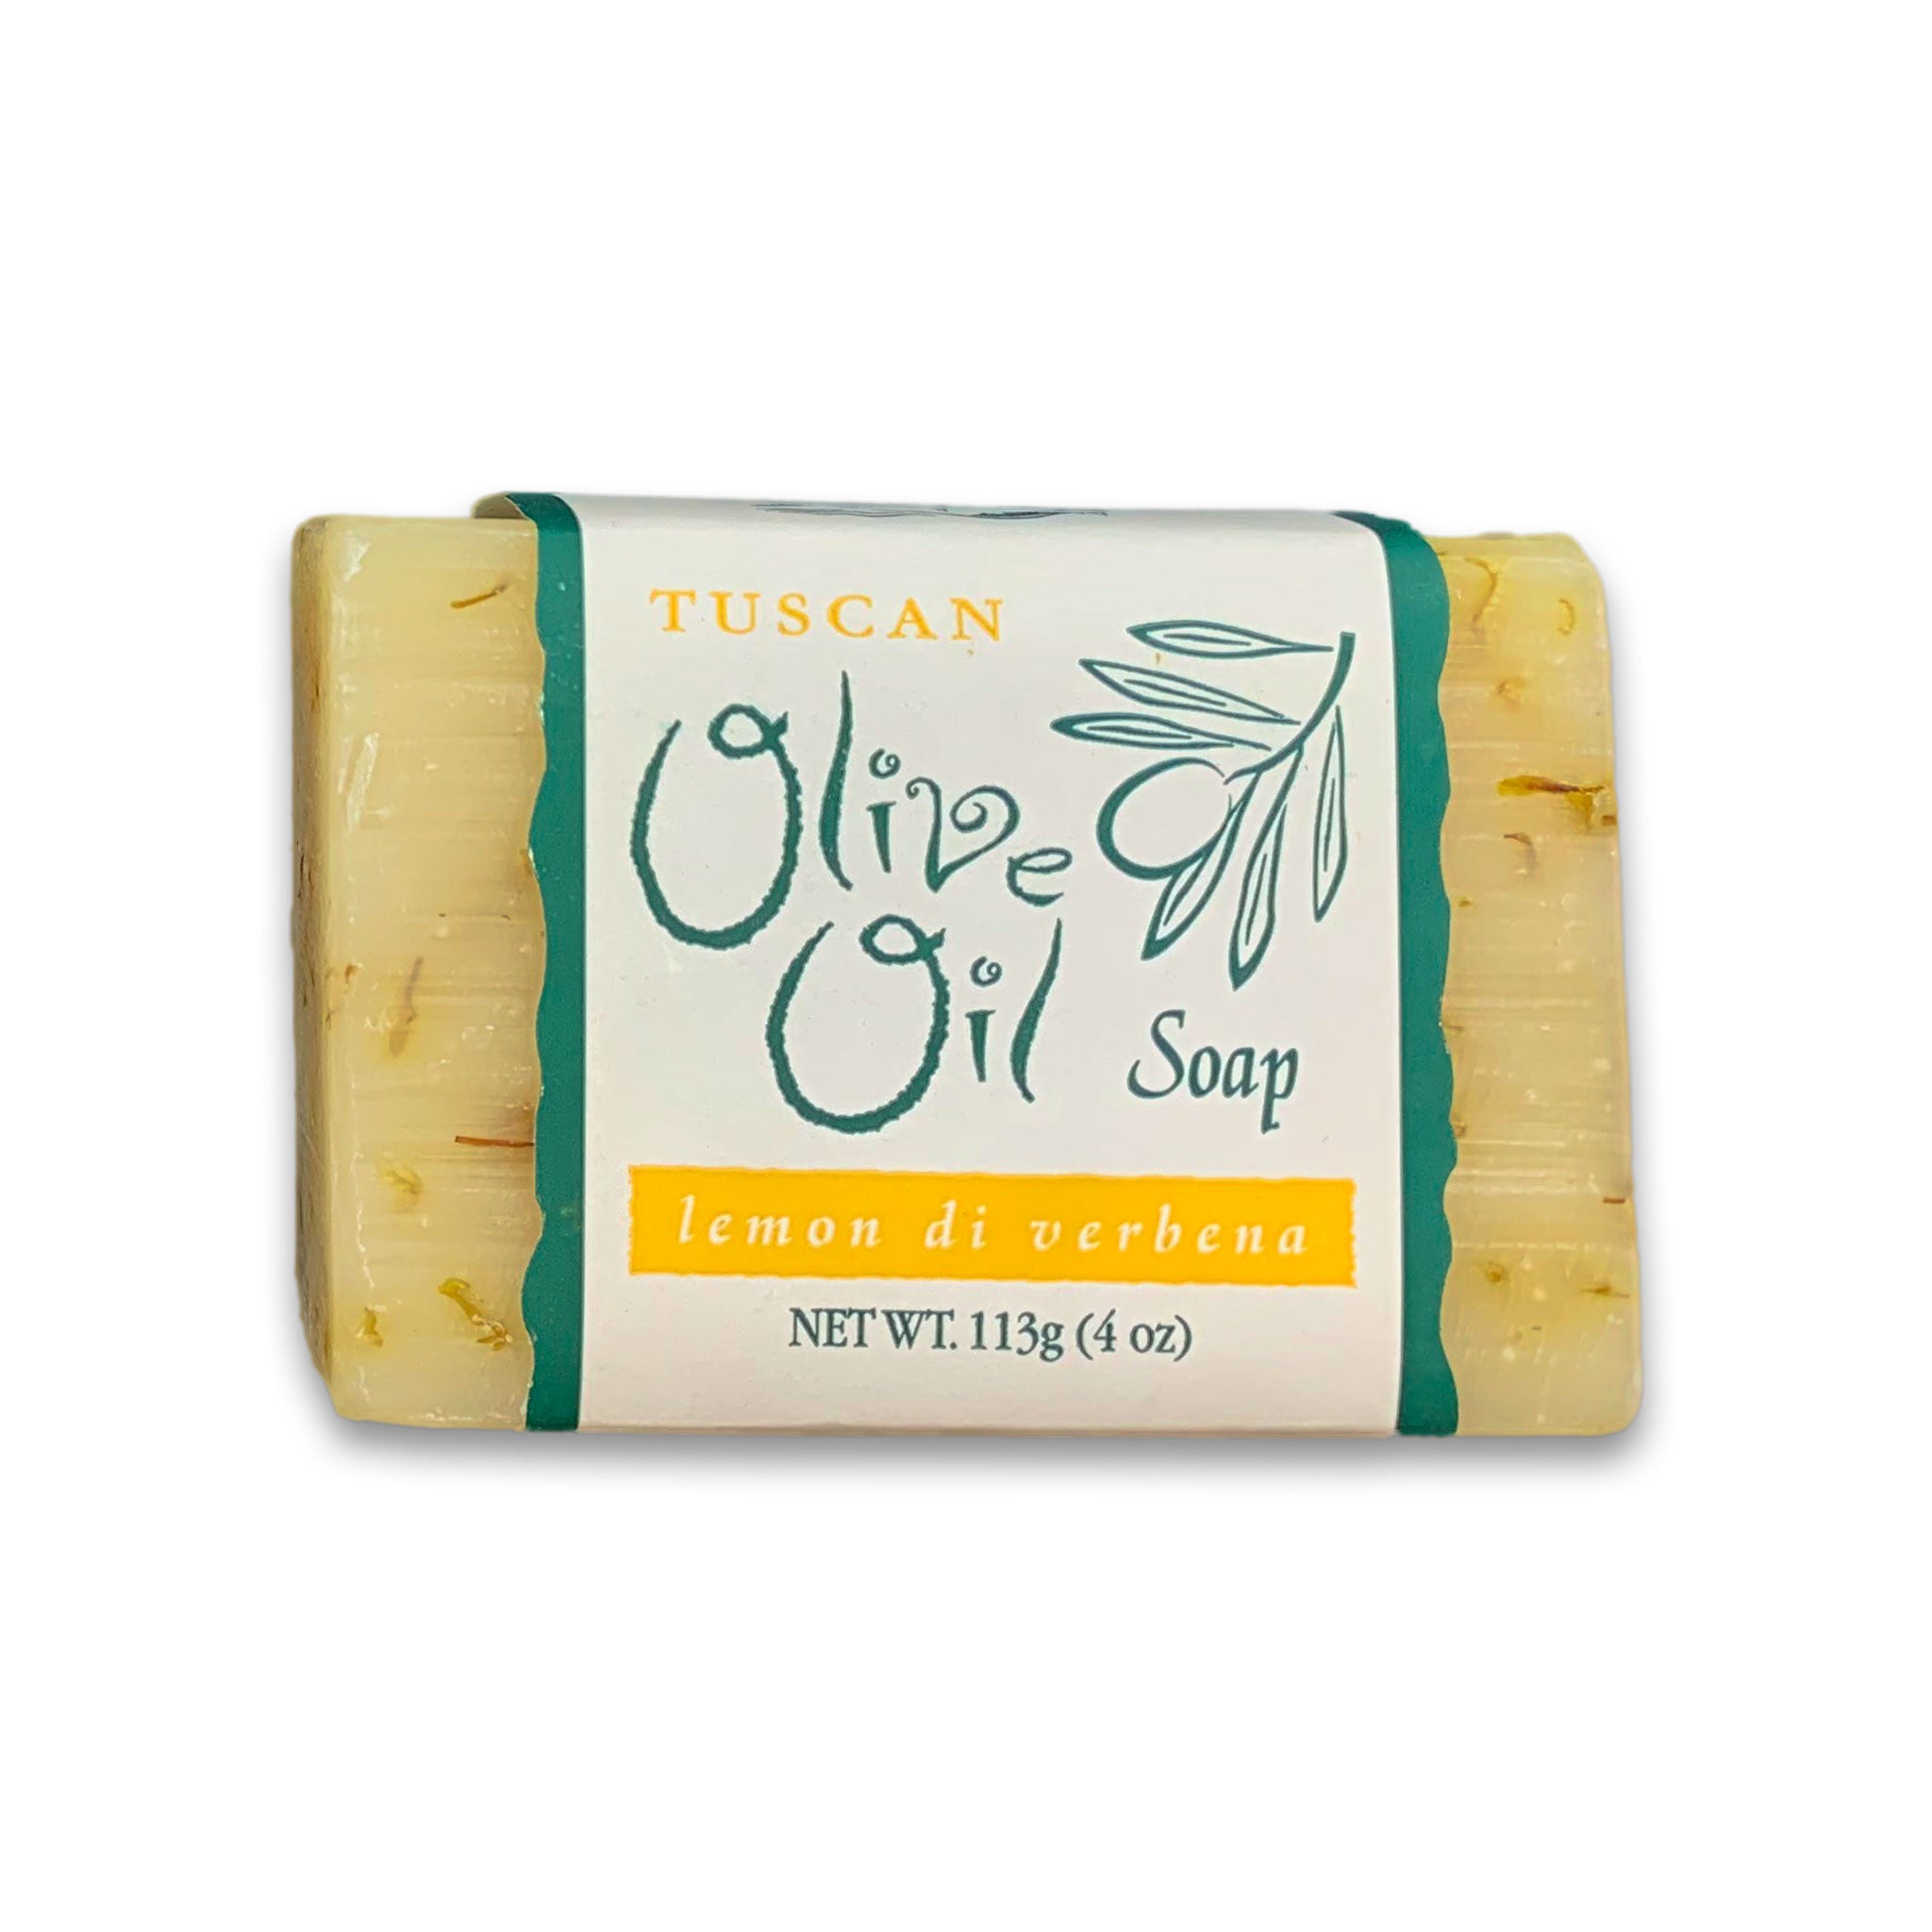 Tuscan Olive Oil Soap - lemon di verbena